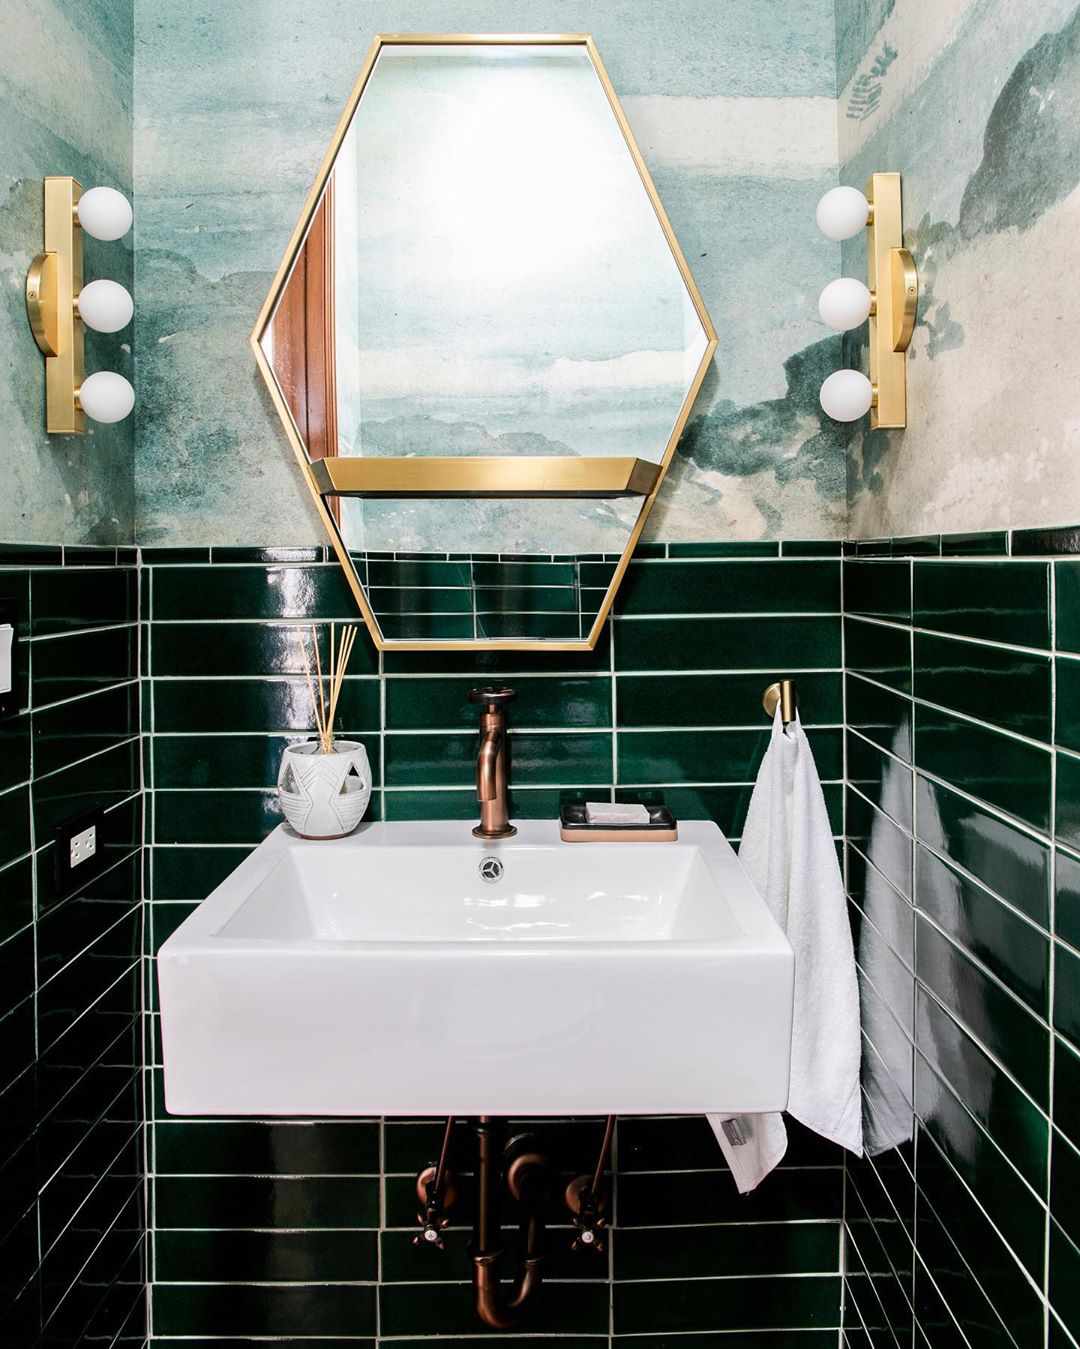 Carrelage et papier peint vert foncé dans une salle de bain